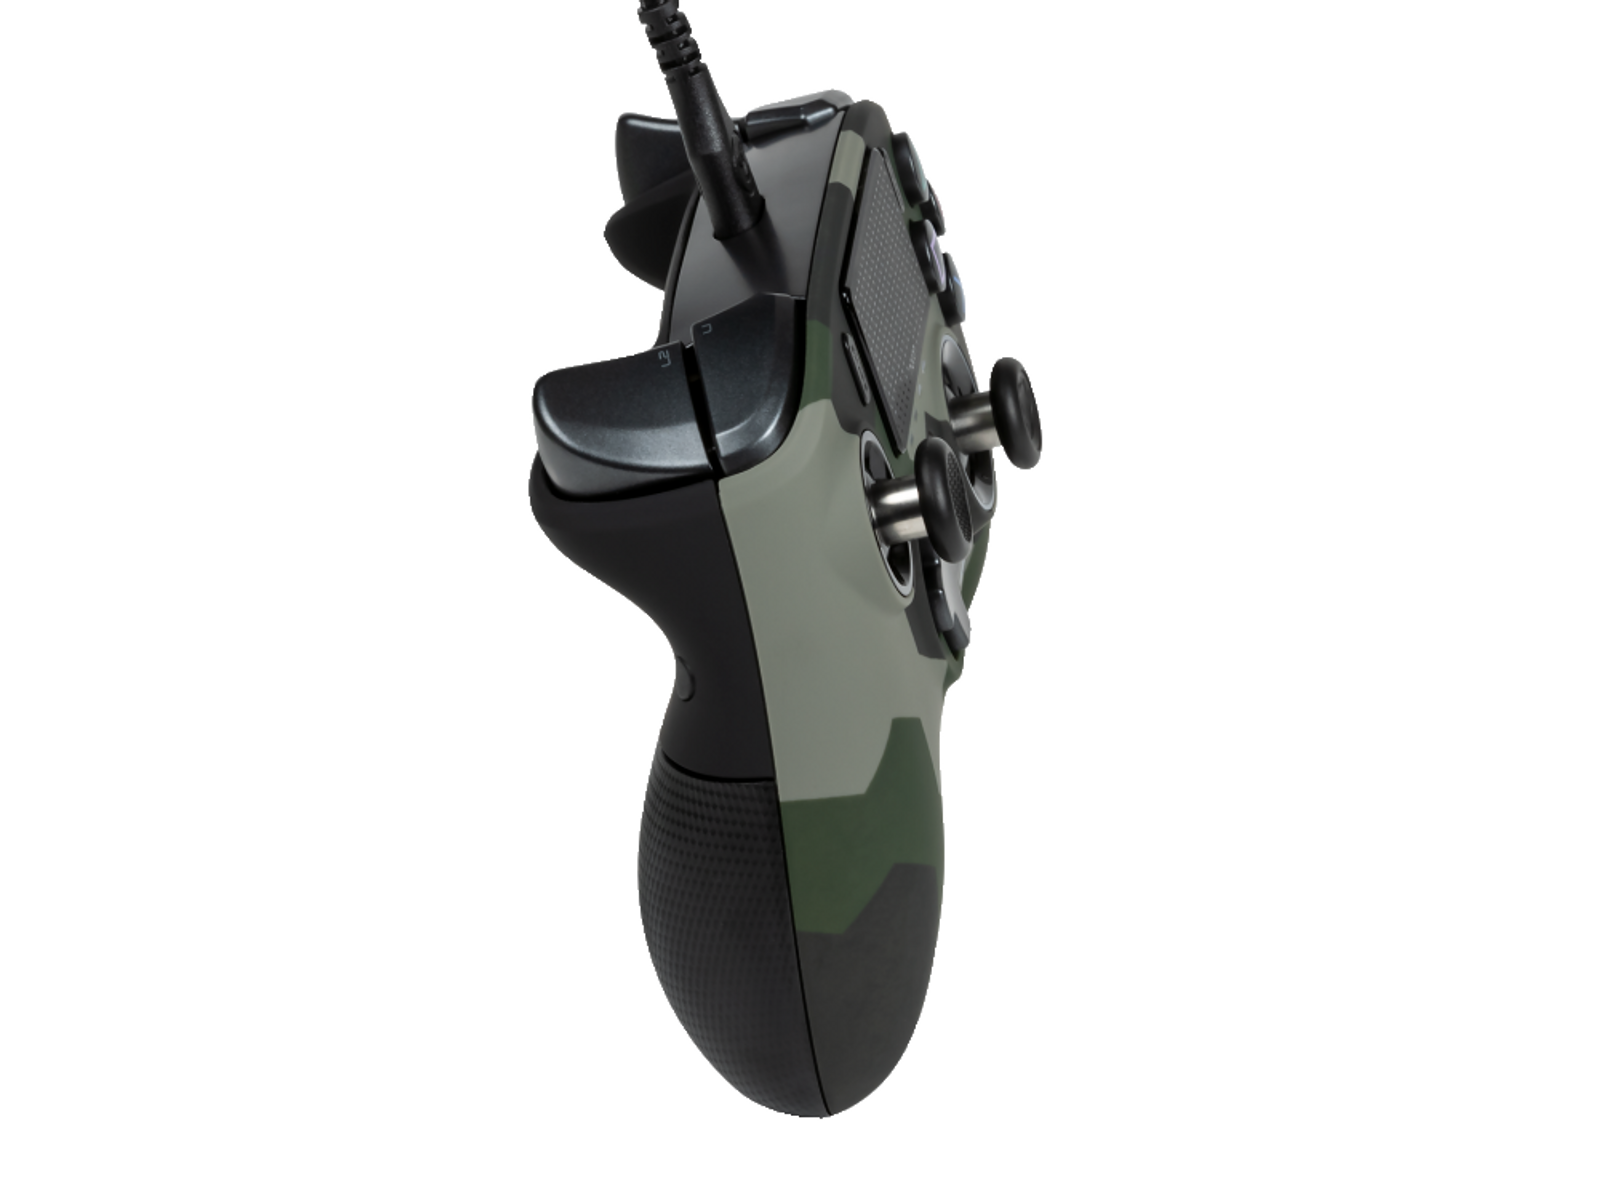 PS4 PS4 3 REV. Controller Camouflage/Grün/Schwarz PRO NA000764 NACON CONTROLLER